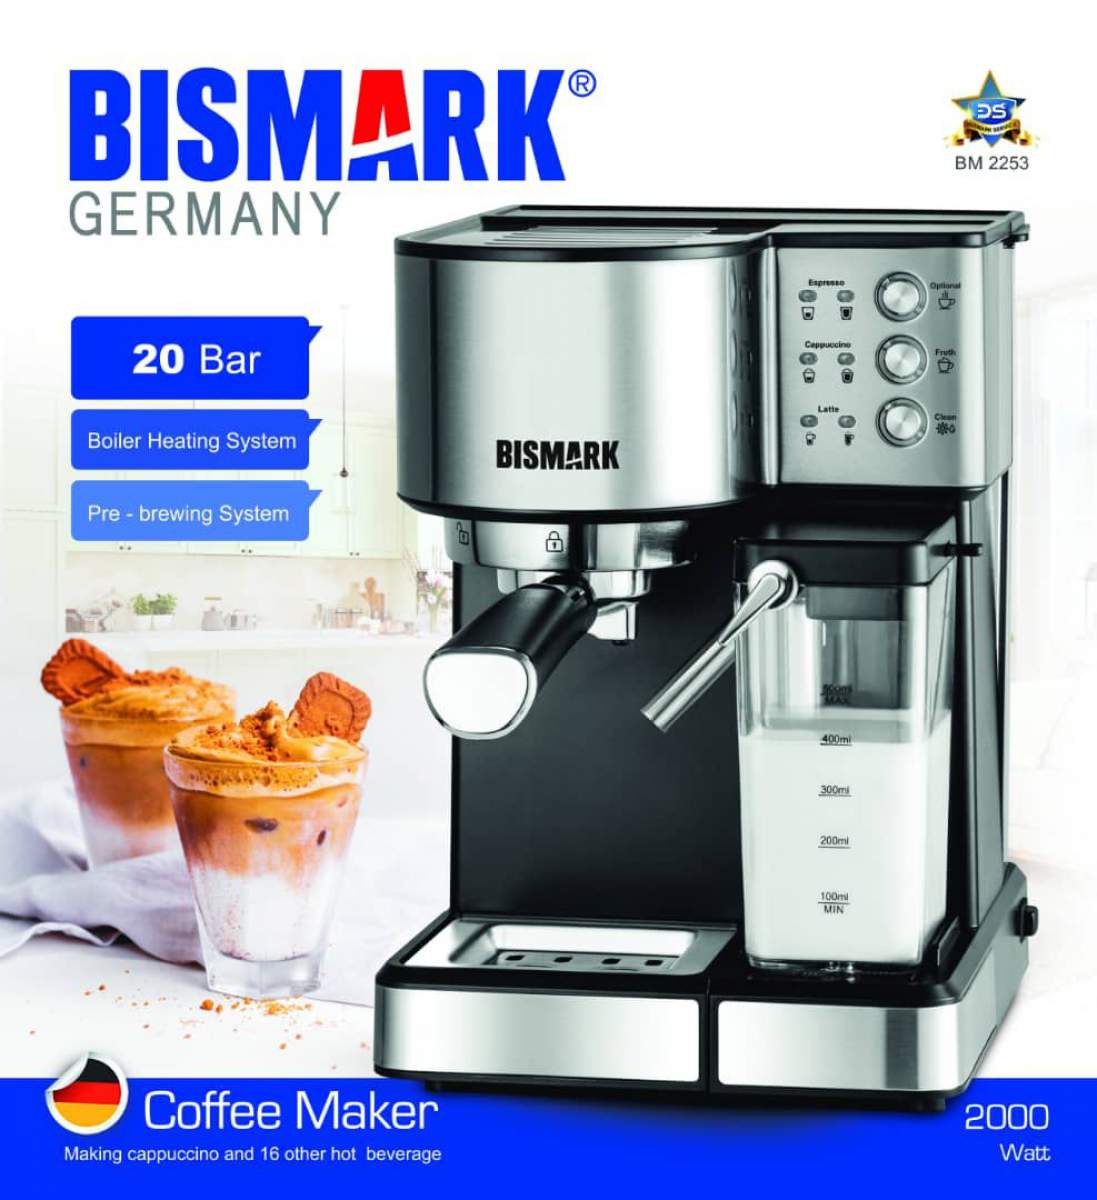 اسپرسوساز بیسمارک تحت لیسانس آلمان مدل BM2253 ا Bismark BM2253 Espresso Machine